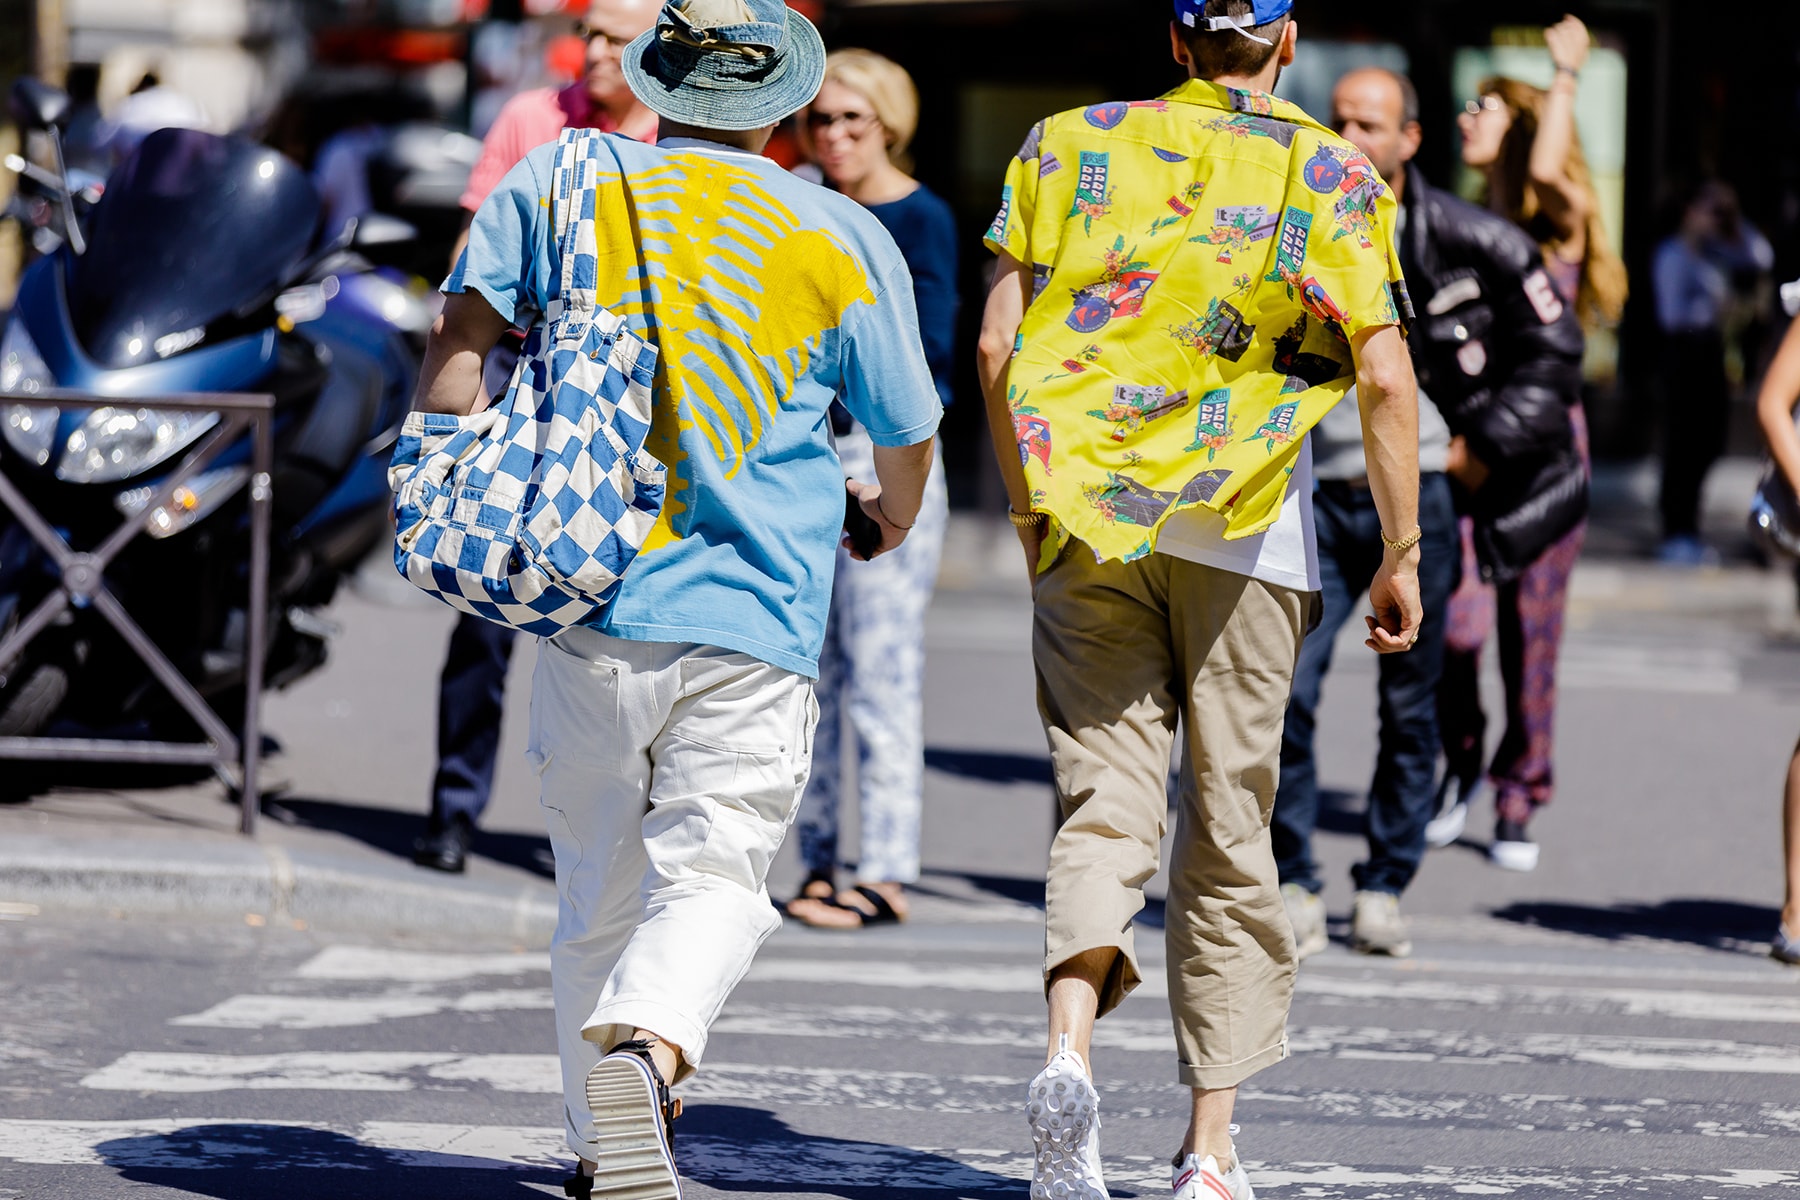 Streetsnaps：Paris Fashion Week Men’s Spring/Summer 2019 今季の主役であるヴァージル・アブローを祝福すべく、至るところで〈Louis Vuitton〉や〈Off-White™️〉を纏う業界人の姿を確認 ミラノからのバトンを受けた花の都・パリは今、ファッションウィーク一色に染まっている。トレンドの震源地として半年に一度、世界各国から洋服やカルチャーに精通した業界人たちが集結するこの一週間は、街の雰囲気も華やかなものへと一変するのだ。  コレクション会場からコレクション会場へ、そして展示会が行われているショールームから再びコレクション会場へと人々が忙しなく移動を続けるオフランウェイには、〈Gucci（グッチ）〉、〈Balenciaga（バレンシアガ）〉、〈Raf Simons（ラフ・シモンズ）〉など、ストリート常連の顔ぶれが揃う。また、今季「LVMH Prize」の大賞に輝いた井野将之が手がける〈doublet（ダブレット）〉のデッドストックパッケージTシャツに加えて、1990年代中期から2000年代初頭にかけてストリートシーンに名を轟かせてきたクロージングブランド〈Echo（エコー）〉のトラックジャケットを羽織る人の姿も。  だが、今季のパリの主役は紛れもなく、Virgil Abloh（ヴァージル・アブロー）である。ストリートには〈Louis Vuitton（ルイ ヴィトン）〉や〈Off-White™️（オフホワイト）〉を身につけ、彼の新たな門出を祝う者たちを至るところで確認した。  パリより到着したストリートスナップを上のフォトギャラリーから確認したあとは、スナップのミラノ編もあわせてチェックしておくべし。